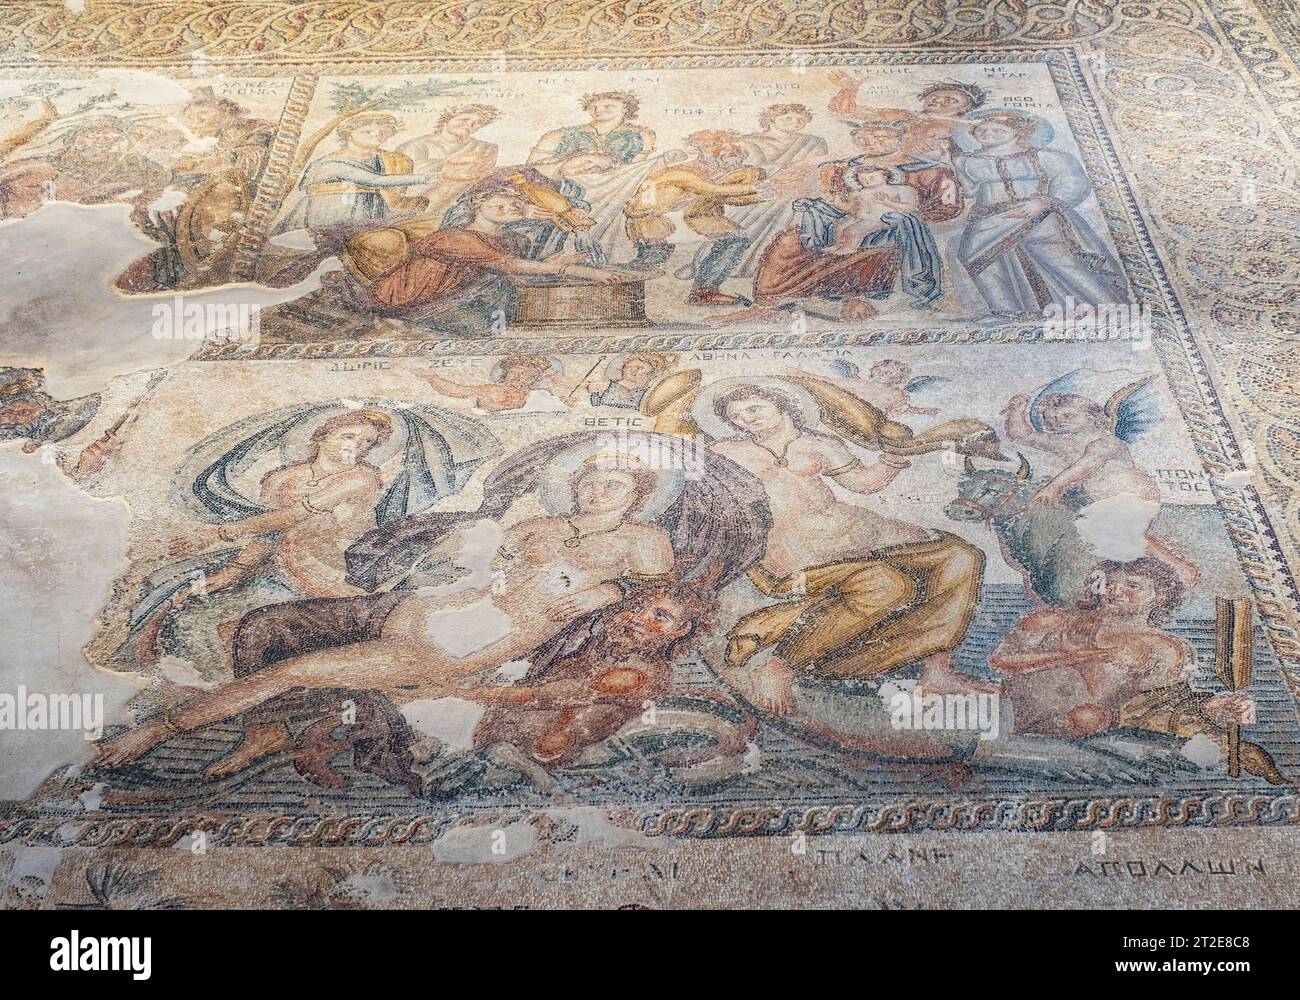 Mosaik, das das erste Baden des gottes des Weinbaus Dionysos im Haus von Aion darstellt, archäologische Stätte von Kato Pafos, Paphos (Pafos), Zypern. Stockfoto